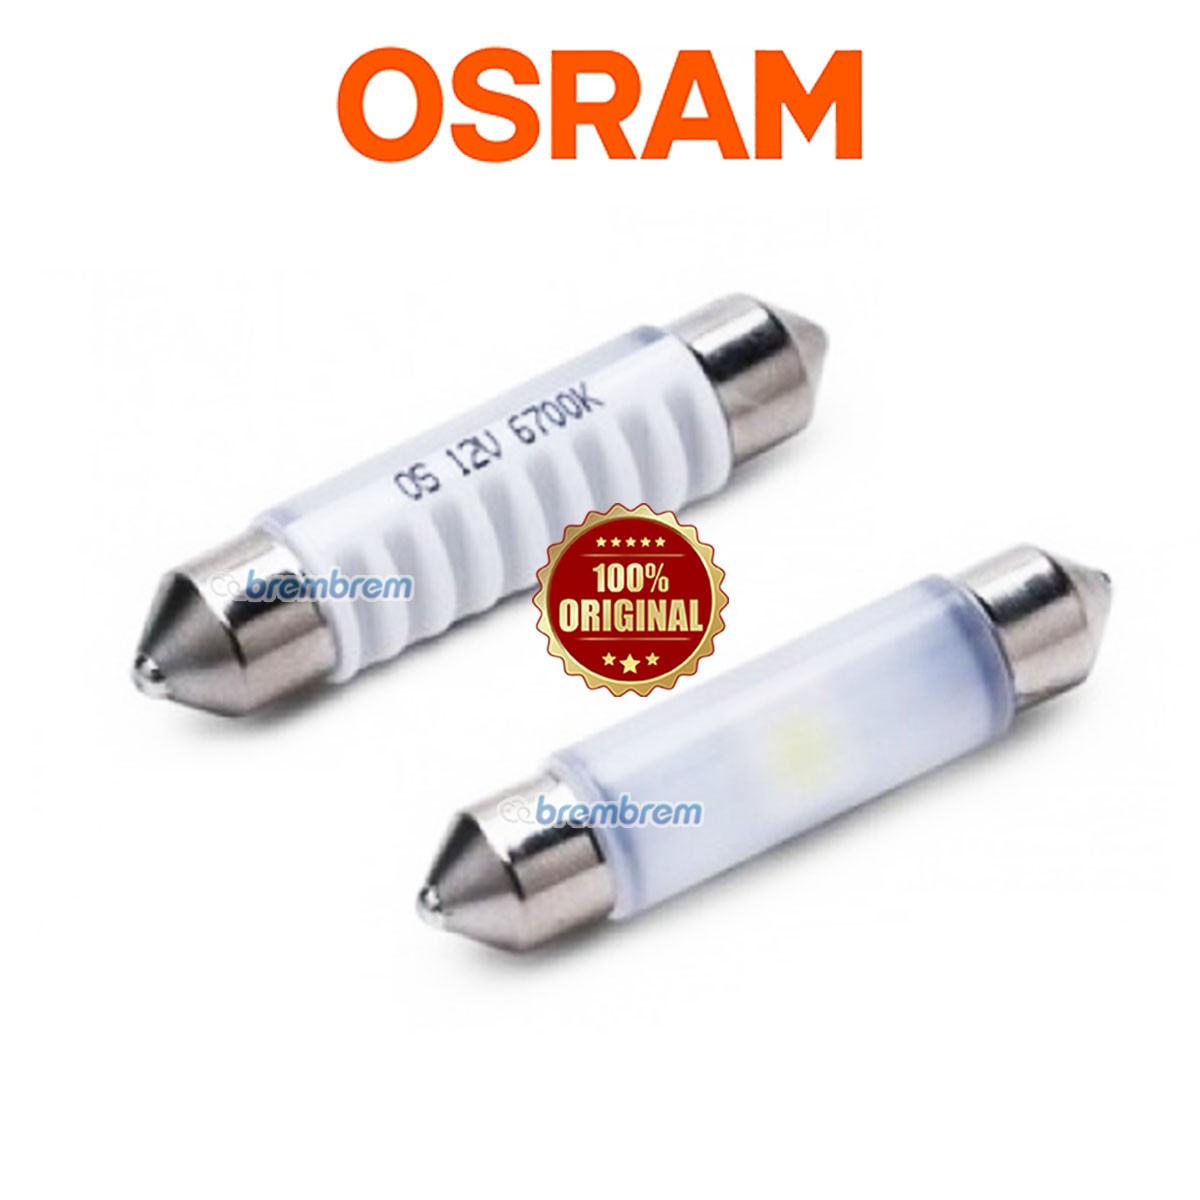 OSRAM RETROFIT 6431 SUPER WHITE (6700K) - LAMPU PLAFON LED MOBIL